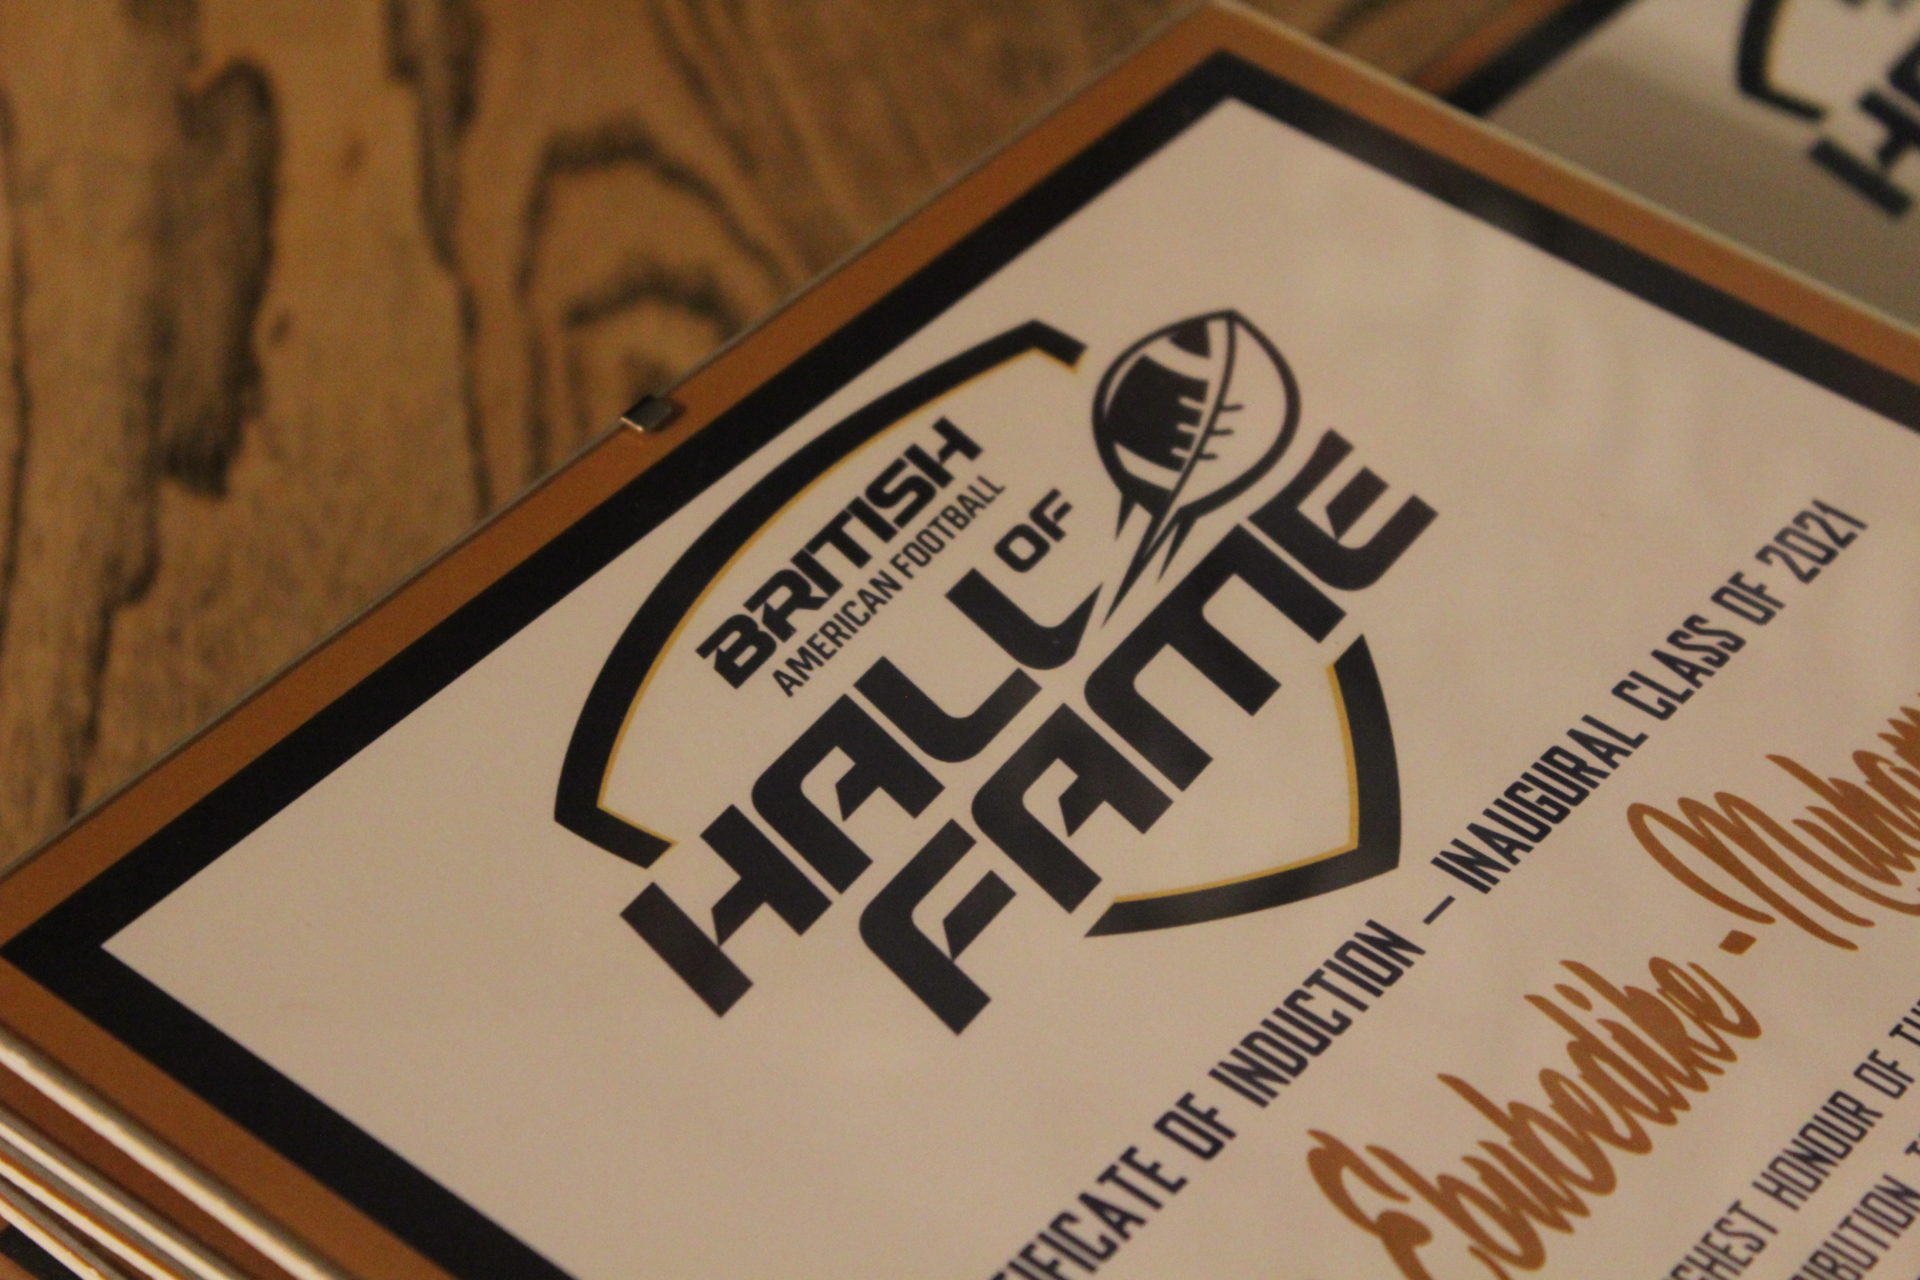 BAFA Hall of Fame Celebration